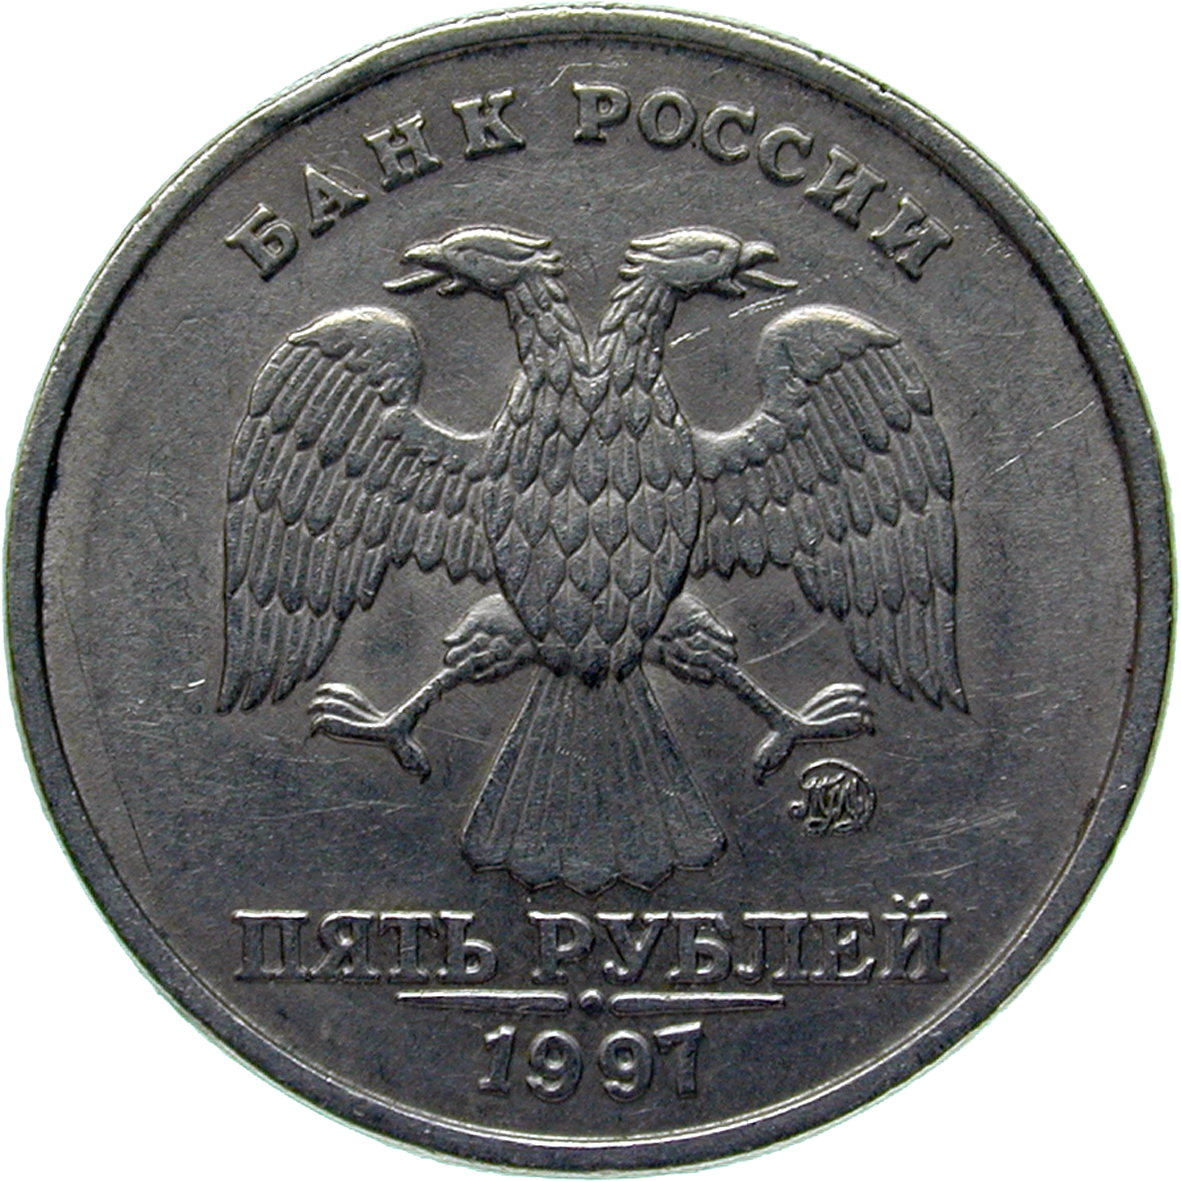 Russische Föderation, 5 Rubel 1997 (obverse)